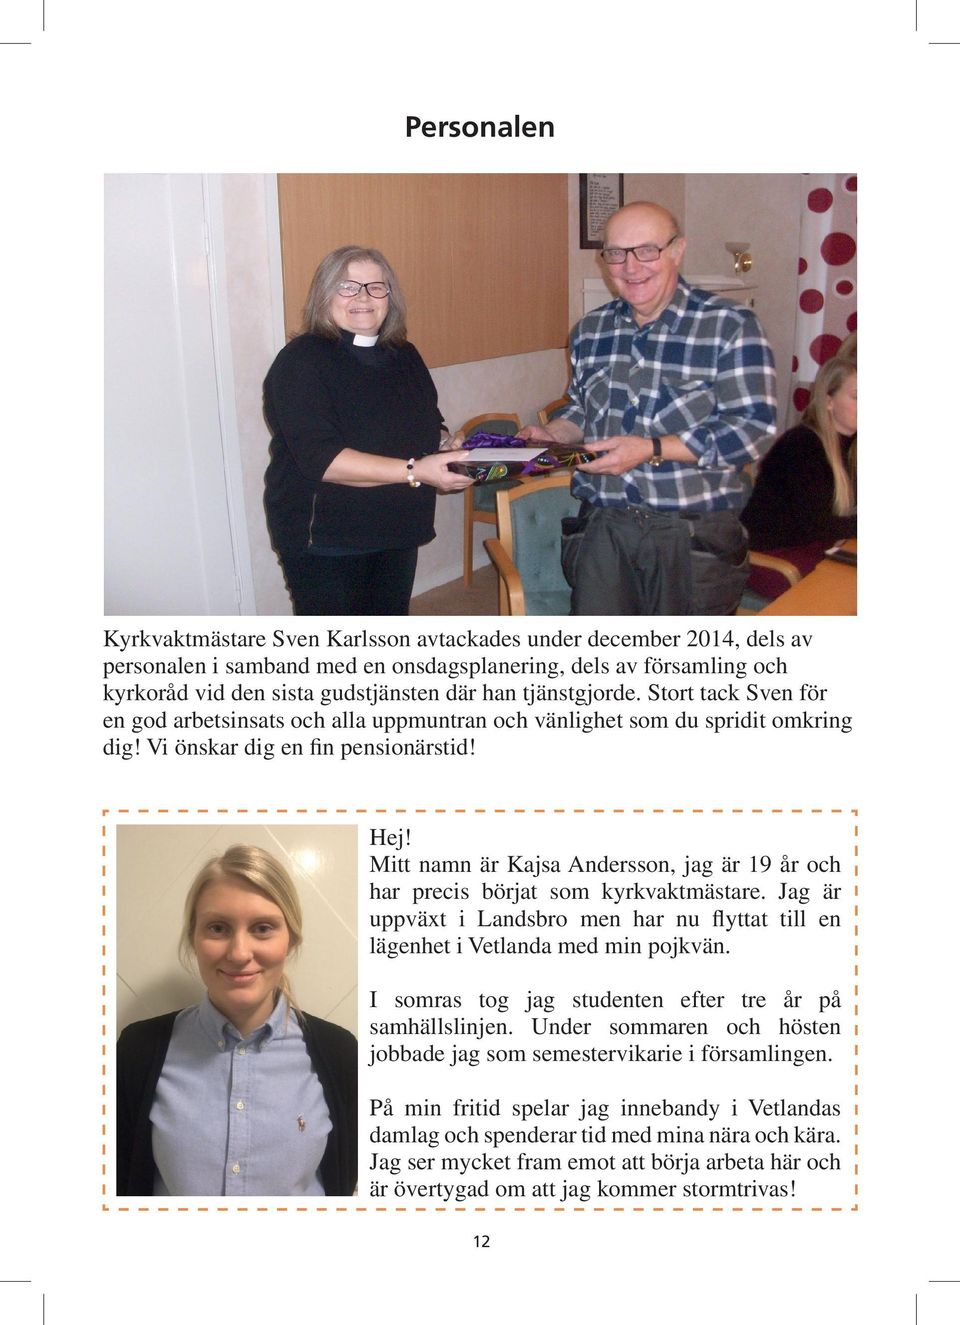 Mitt namn är Kajsa Andersson, jag är 19 år och har precis börjat som kyrkvaktmästare. Jag är uppväxt i Landsbro men har nu flyttat till en lägenhet i Vetlanda med min pojkvän.